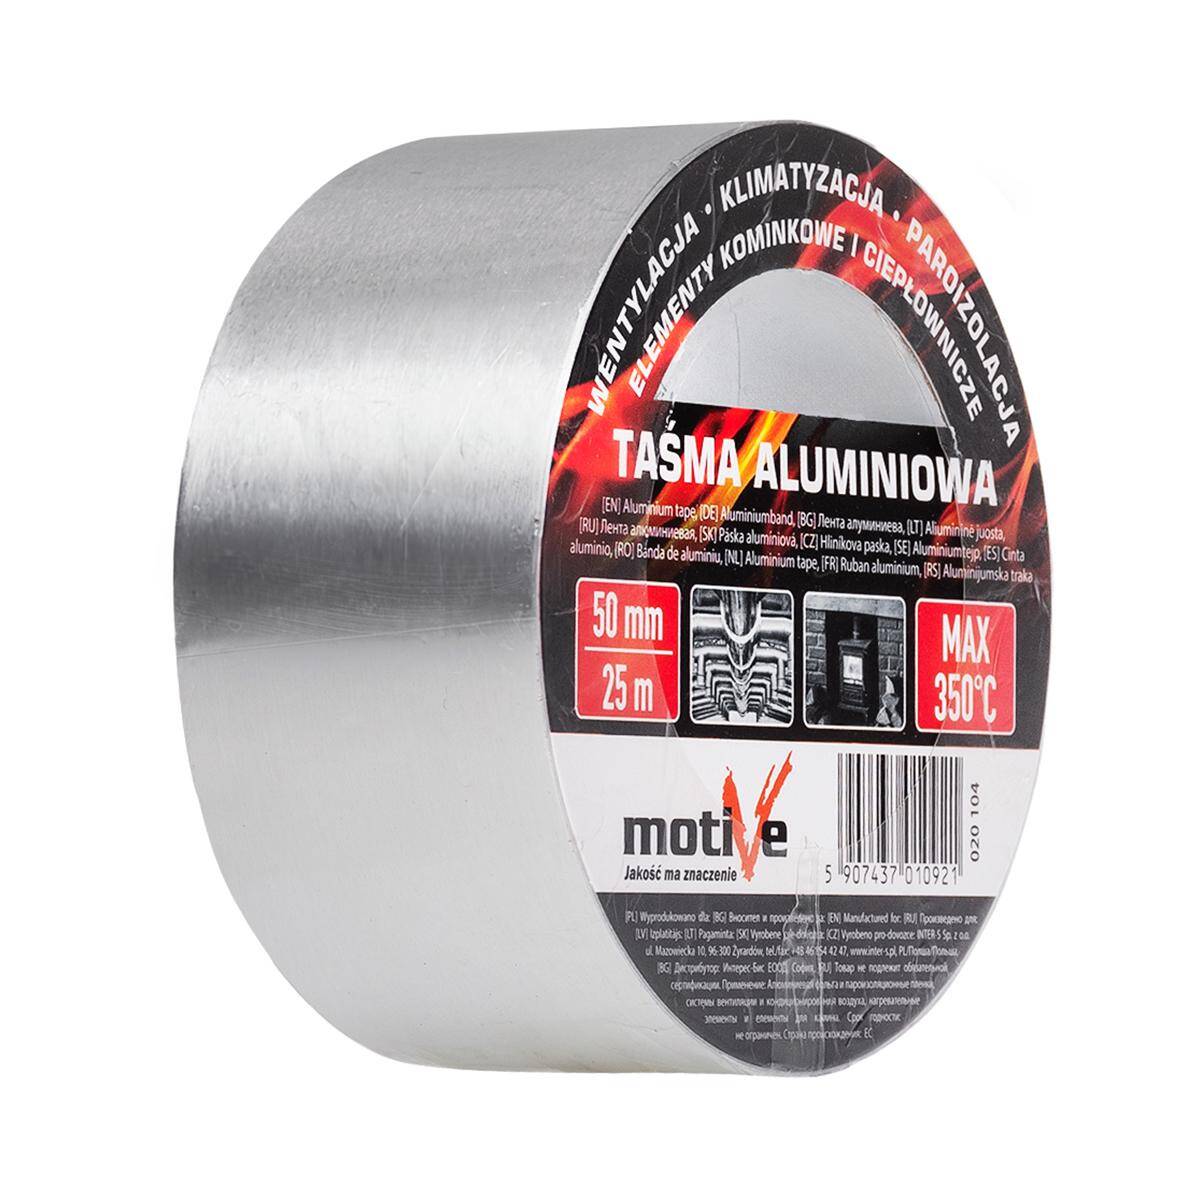  Aluminium tape 350°C 50mm x 25m